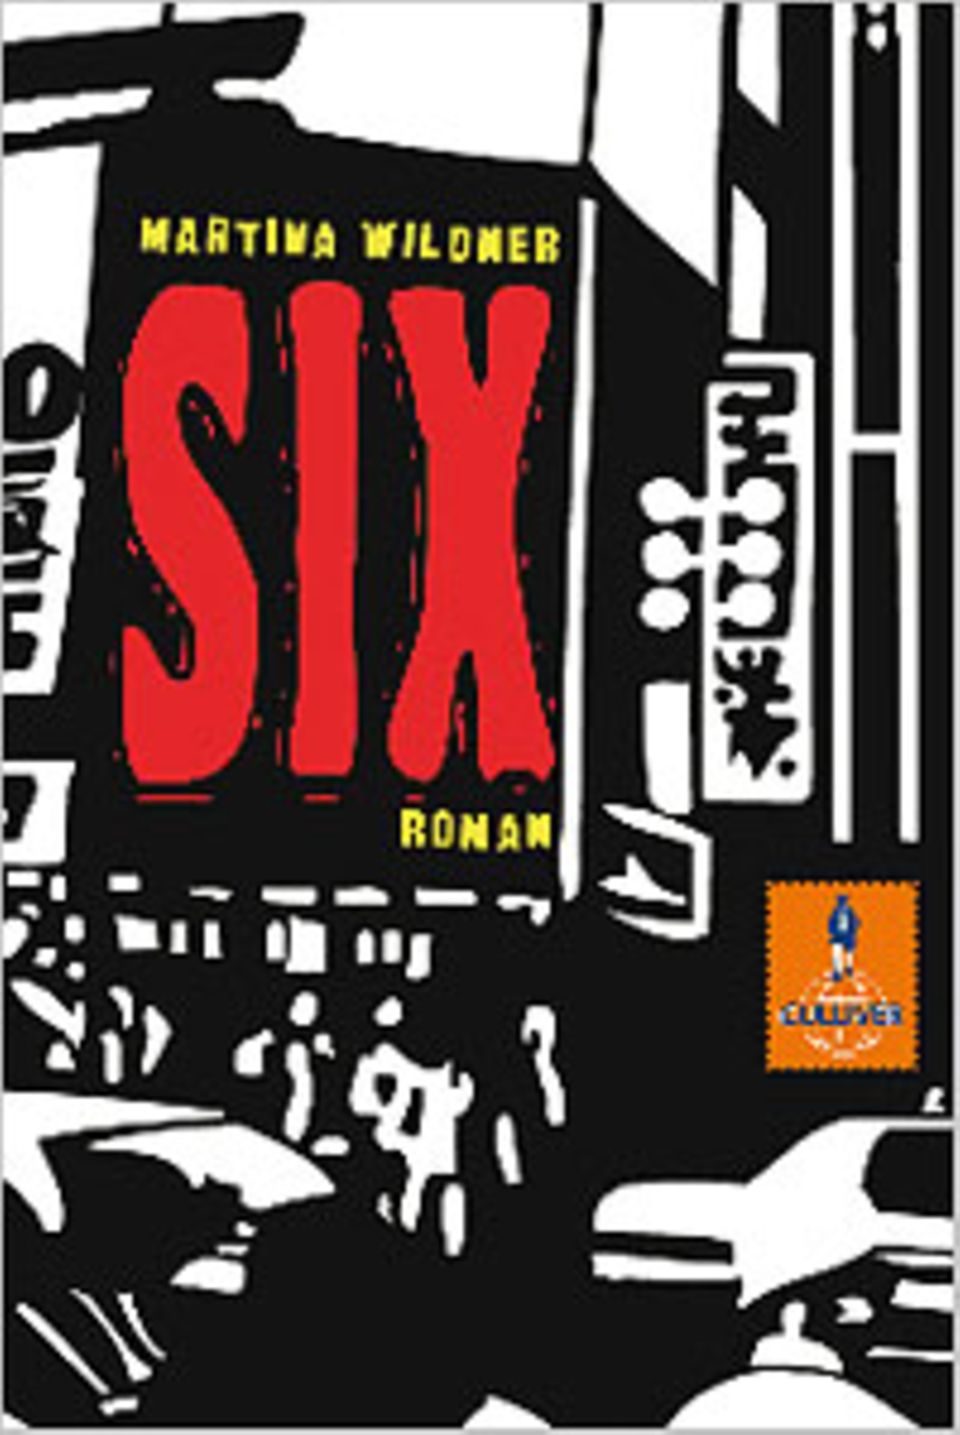 Cover des Mangas "Six"